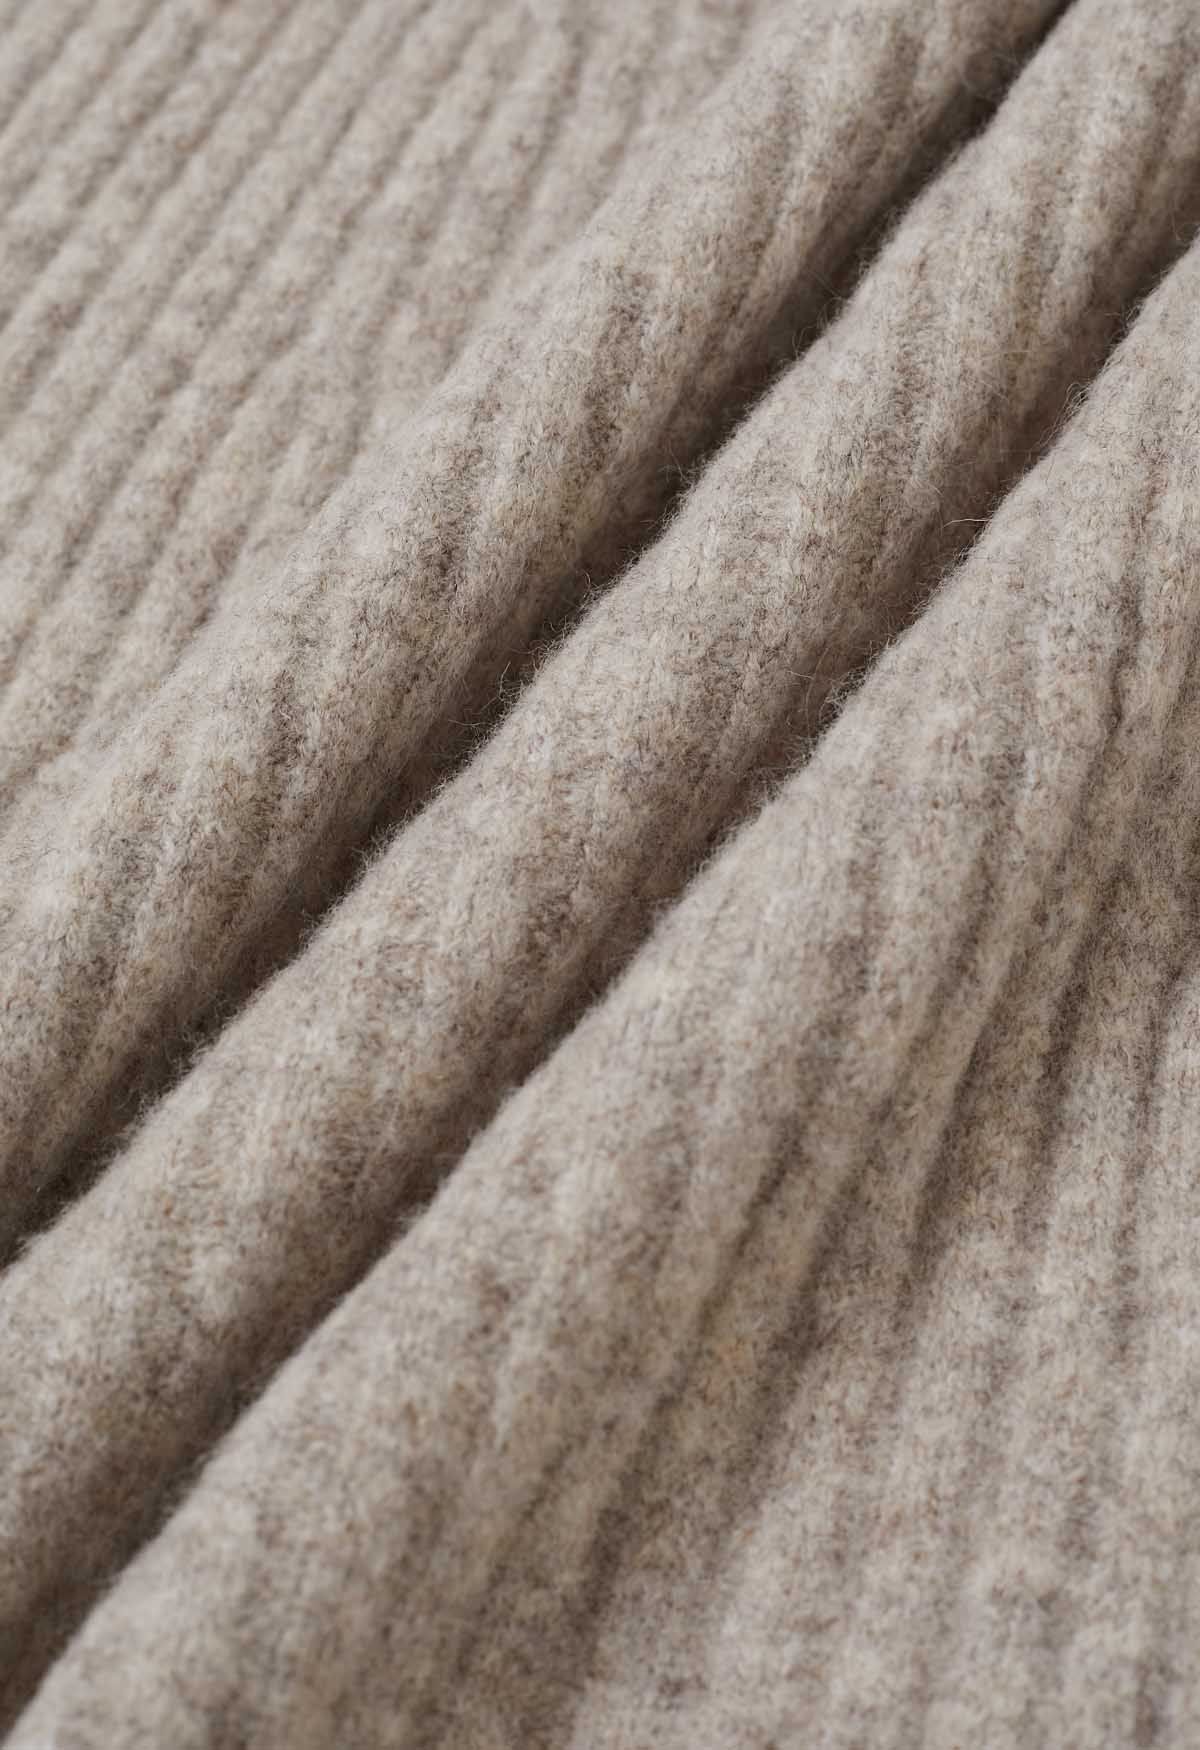 Conjunto de falda y top de mezcla de lana con cintura cruzada en color avena